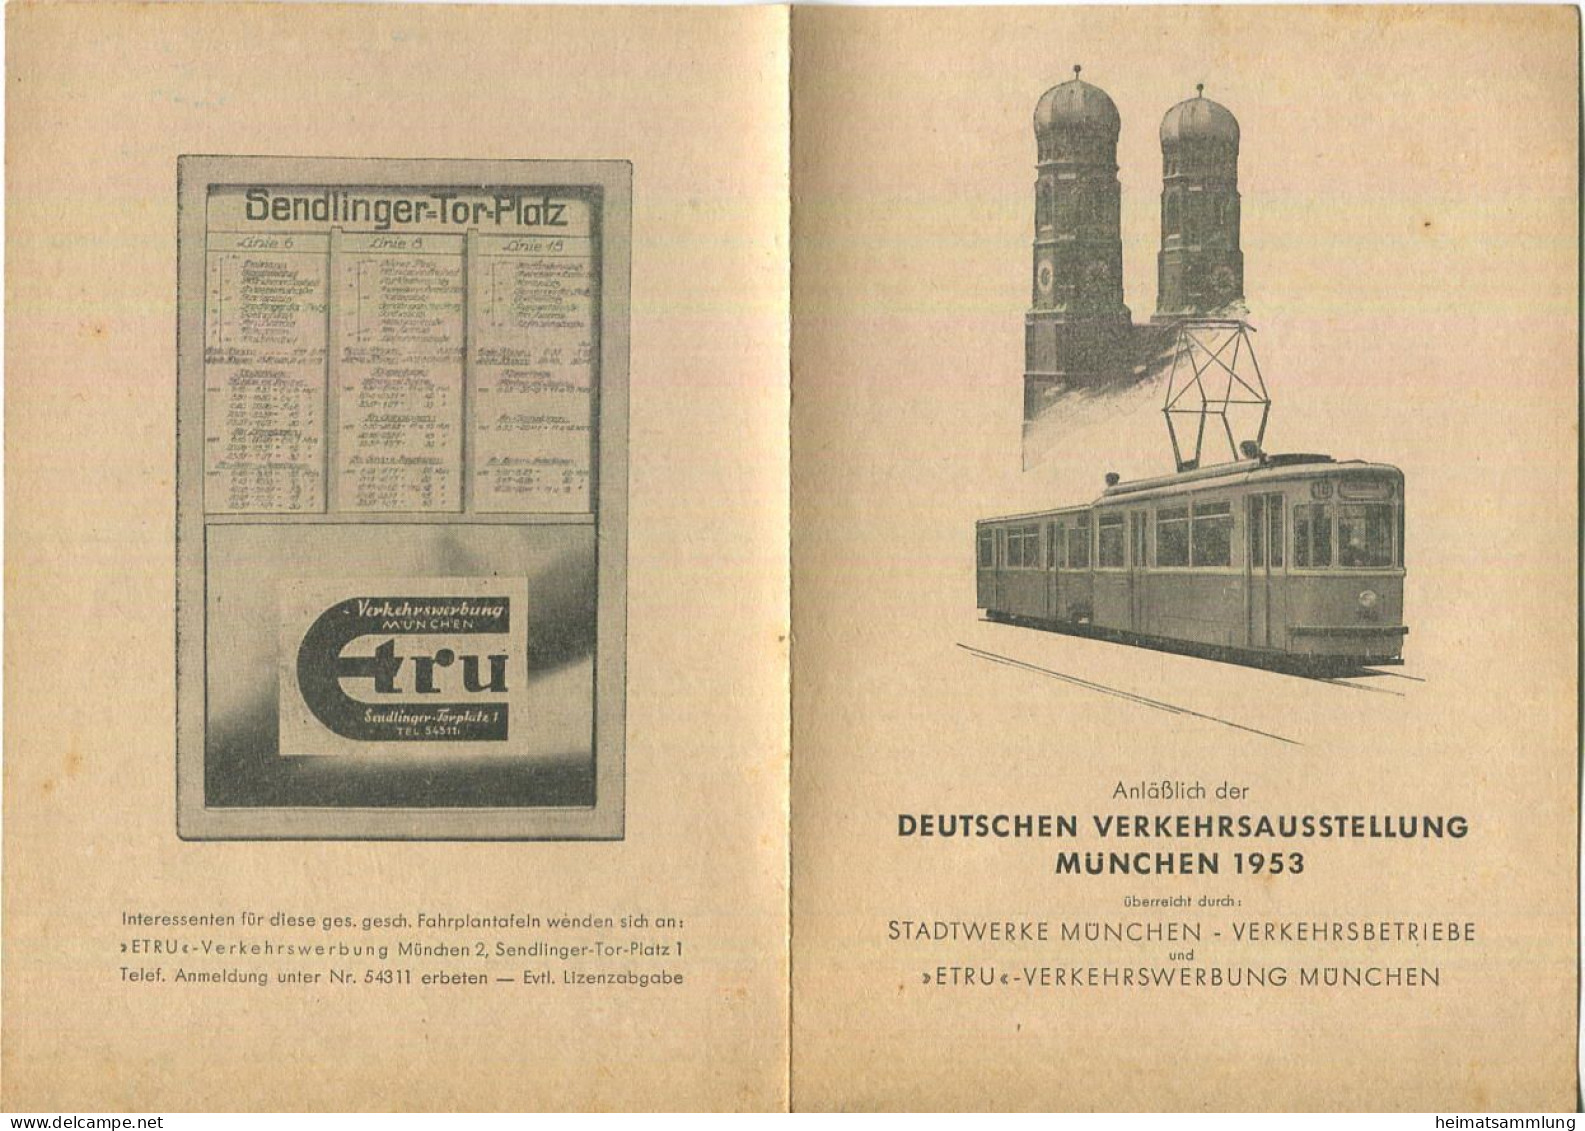 München 1953 - Verkehrslinien - Stadtwerke München - Verkehrsbetriebe - Europe